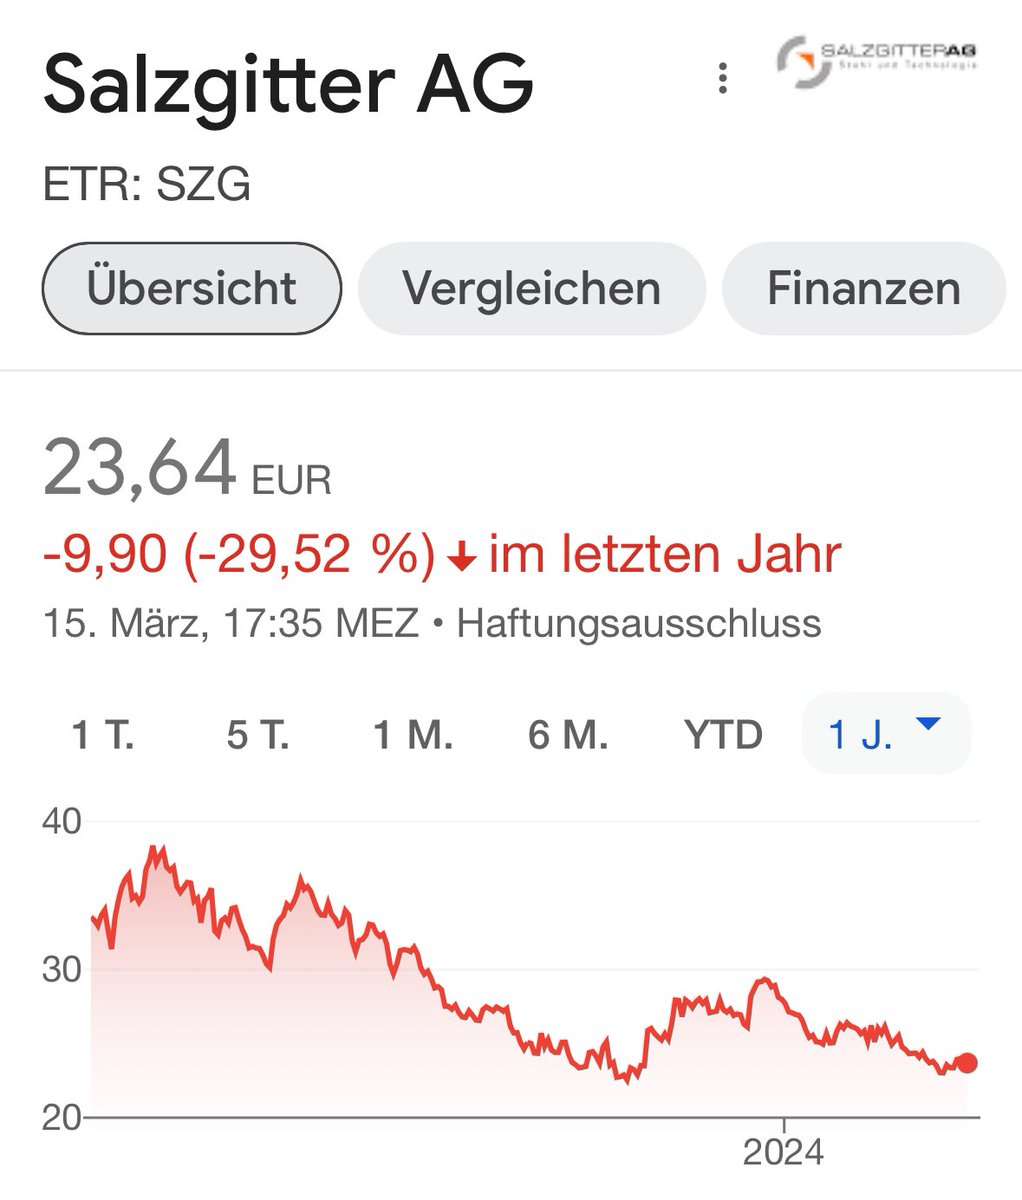 Wer glaubt noch an die #Salzgitter AG, deren Vorstandschef Gunnar Groebler (Jahressalär 1,69 Mio) alle Karten auf grünen Stahl setzt?